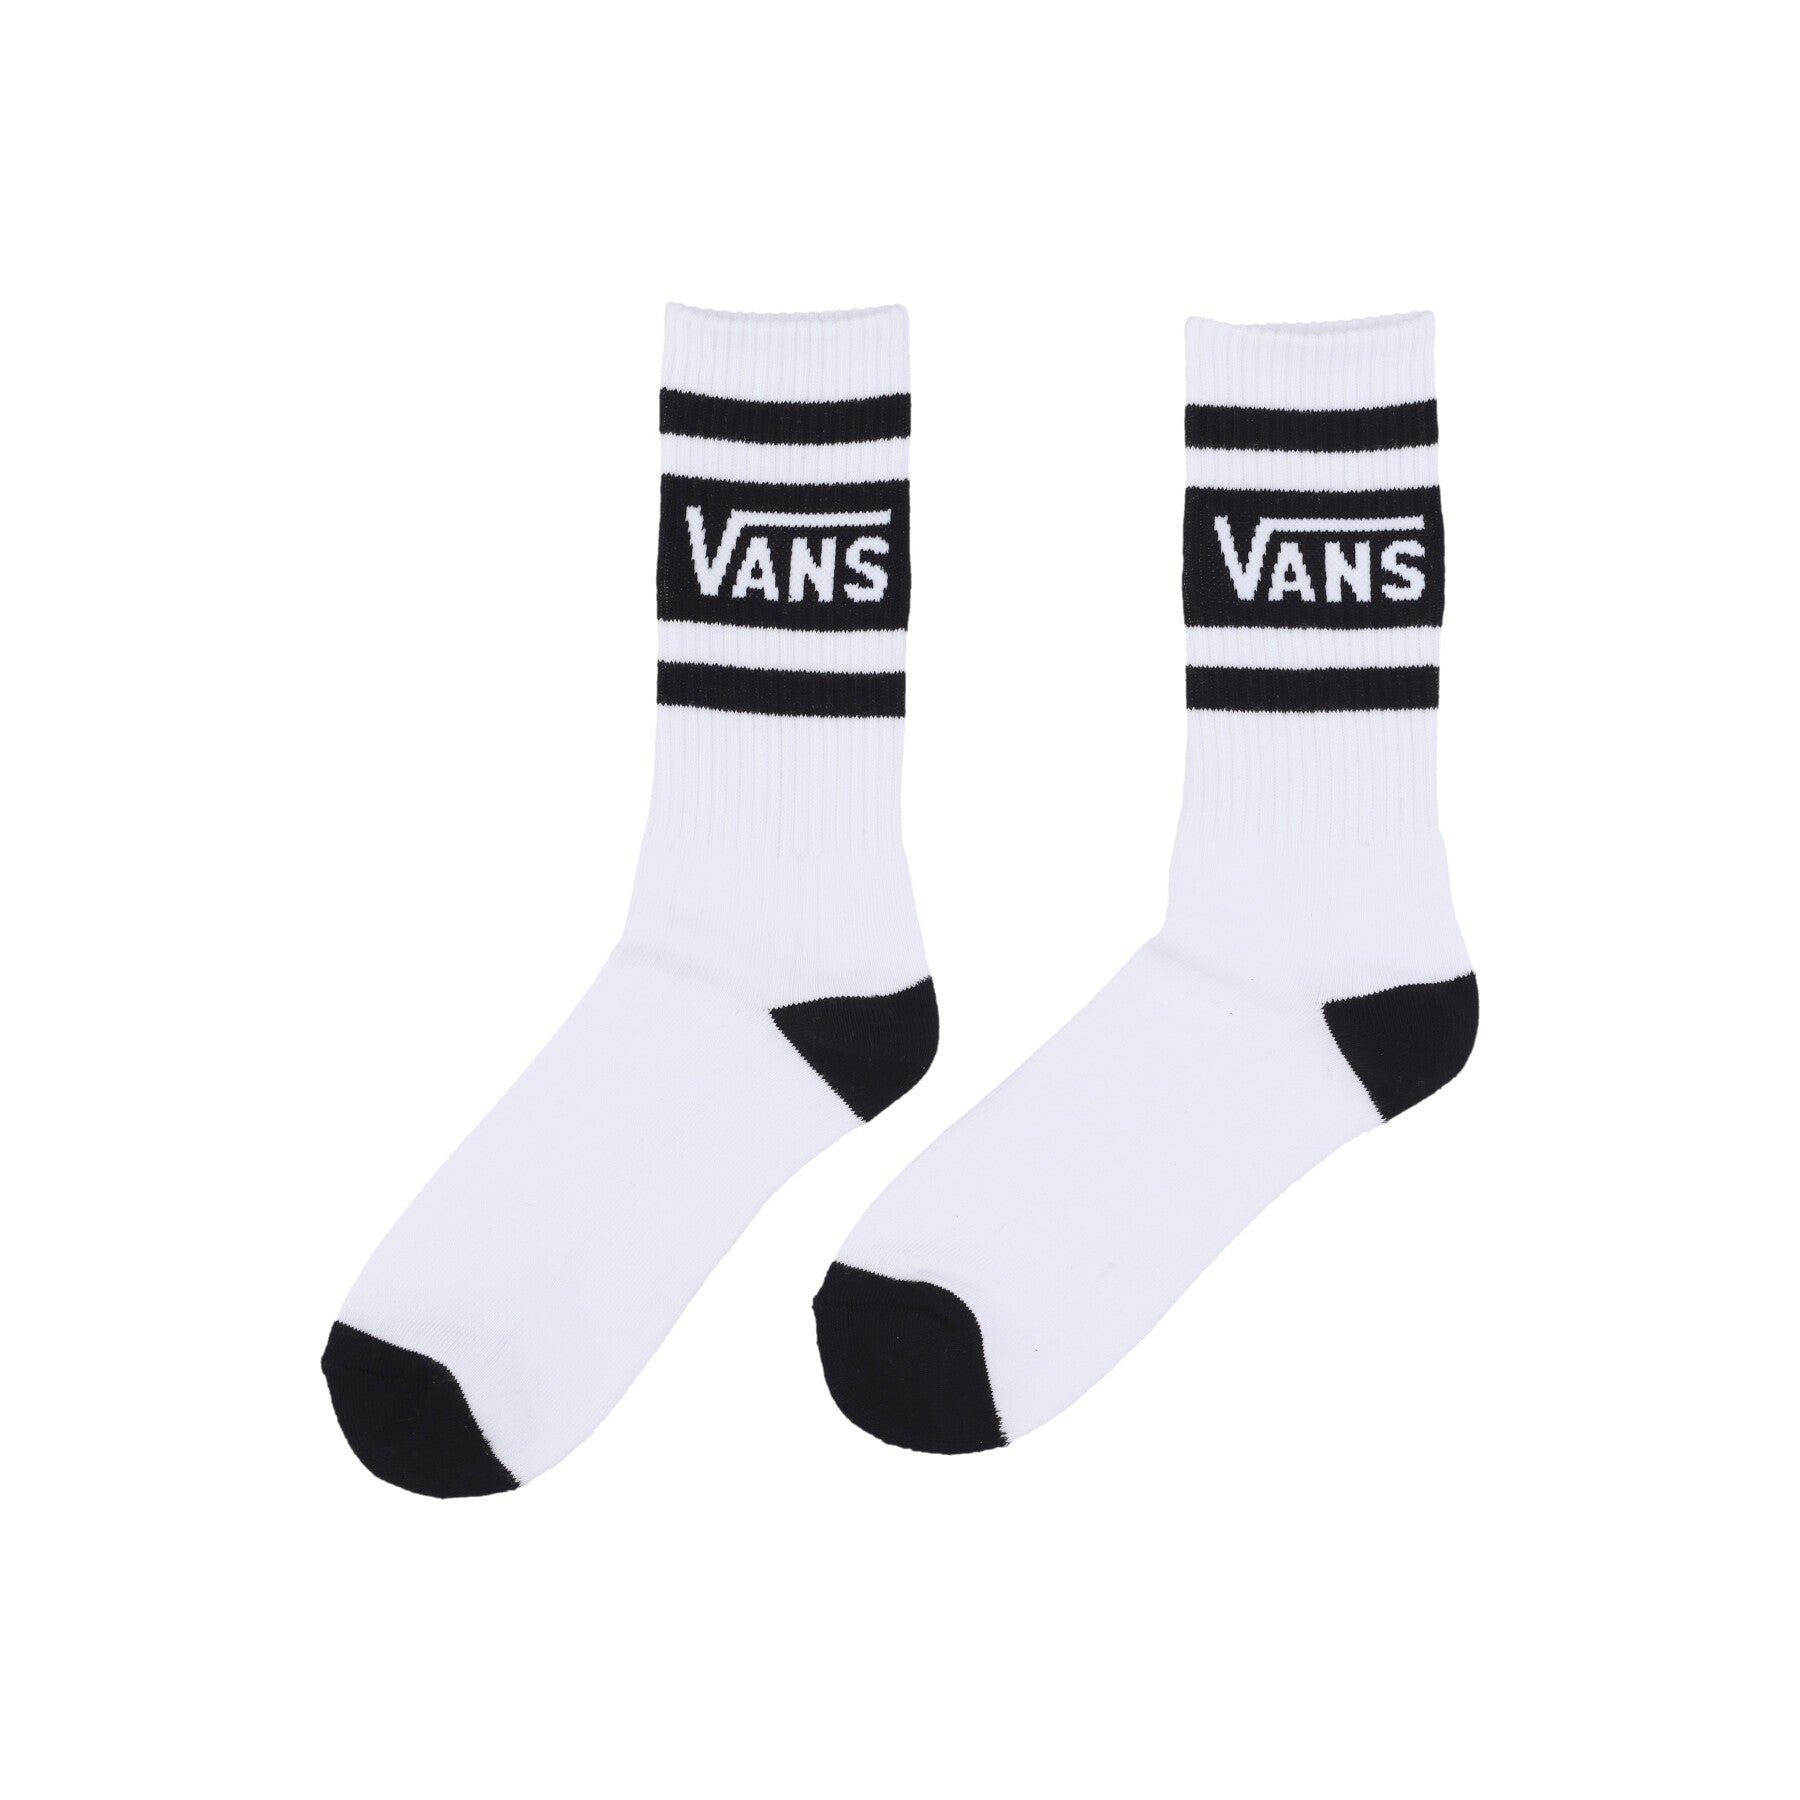 Vans, Calza Media Uomo Drop V Crew Socks, White/black